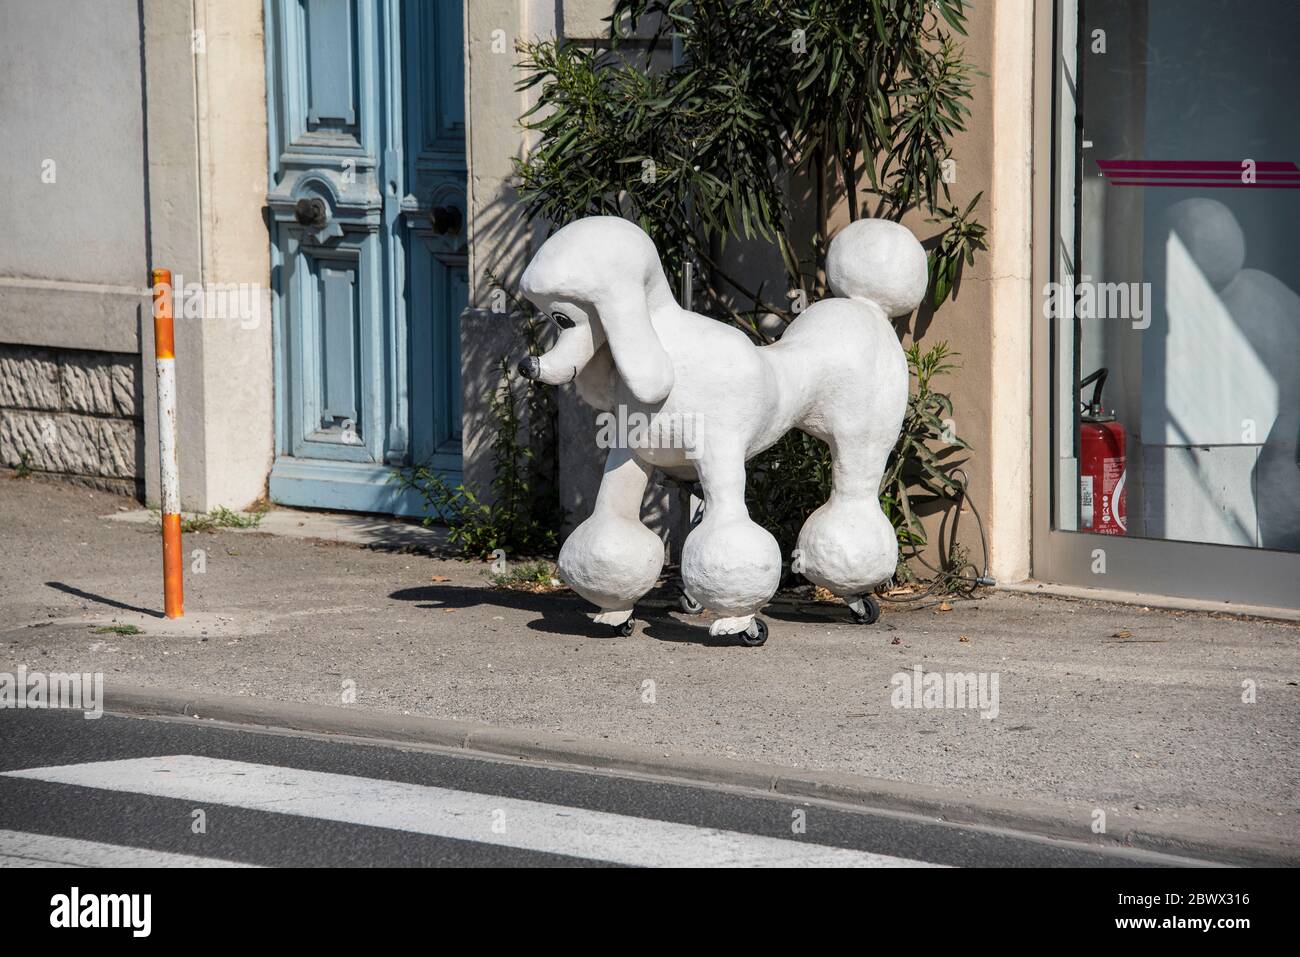 Maquette Poodle magasin extérieur dans la rue Aigues-mortes France Banque D'Images